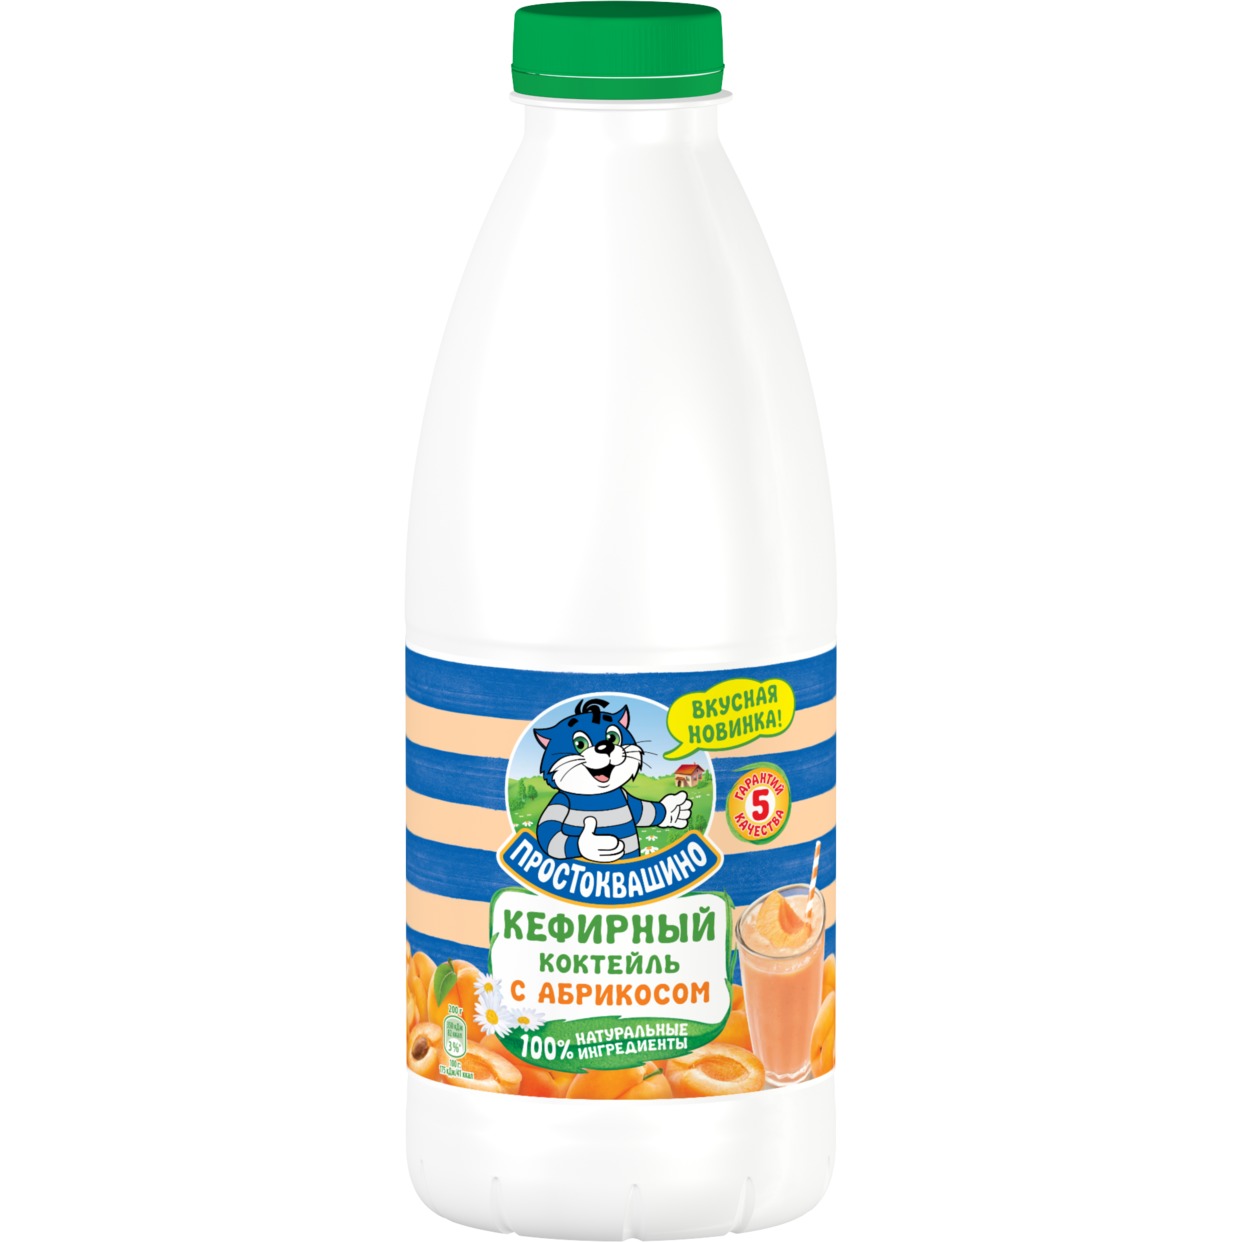 БЗМЖ Простоквашино Биопродукт кисломолочный кефирный, обогащ. бифидобактериями, с абрикосом "Кефирный Коктейль", обезжиренный 900г